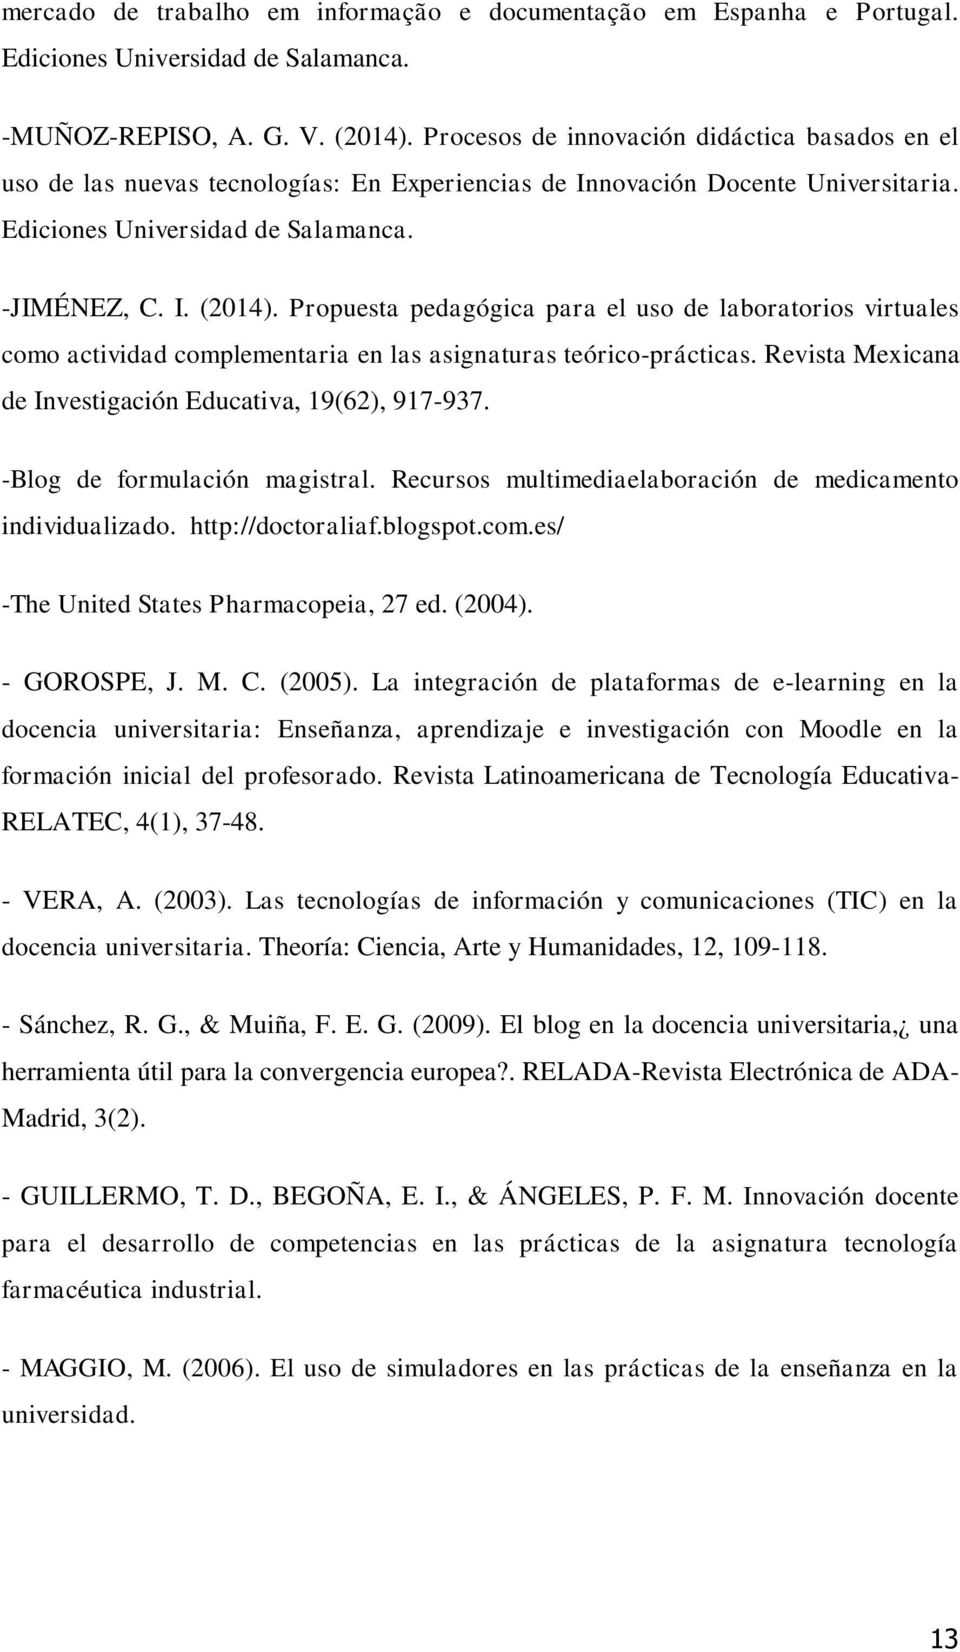 Propuesta pedagógica para el uso de laboratorios virtuales como actividad complementaria en las asignaturas teórico-prácticas. Revista Mexicana de Investigación Educativa, 19(62), 917-937.